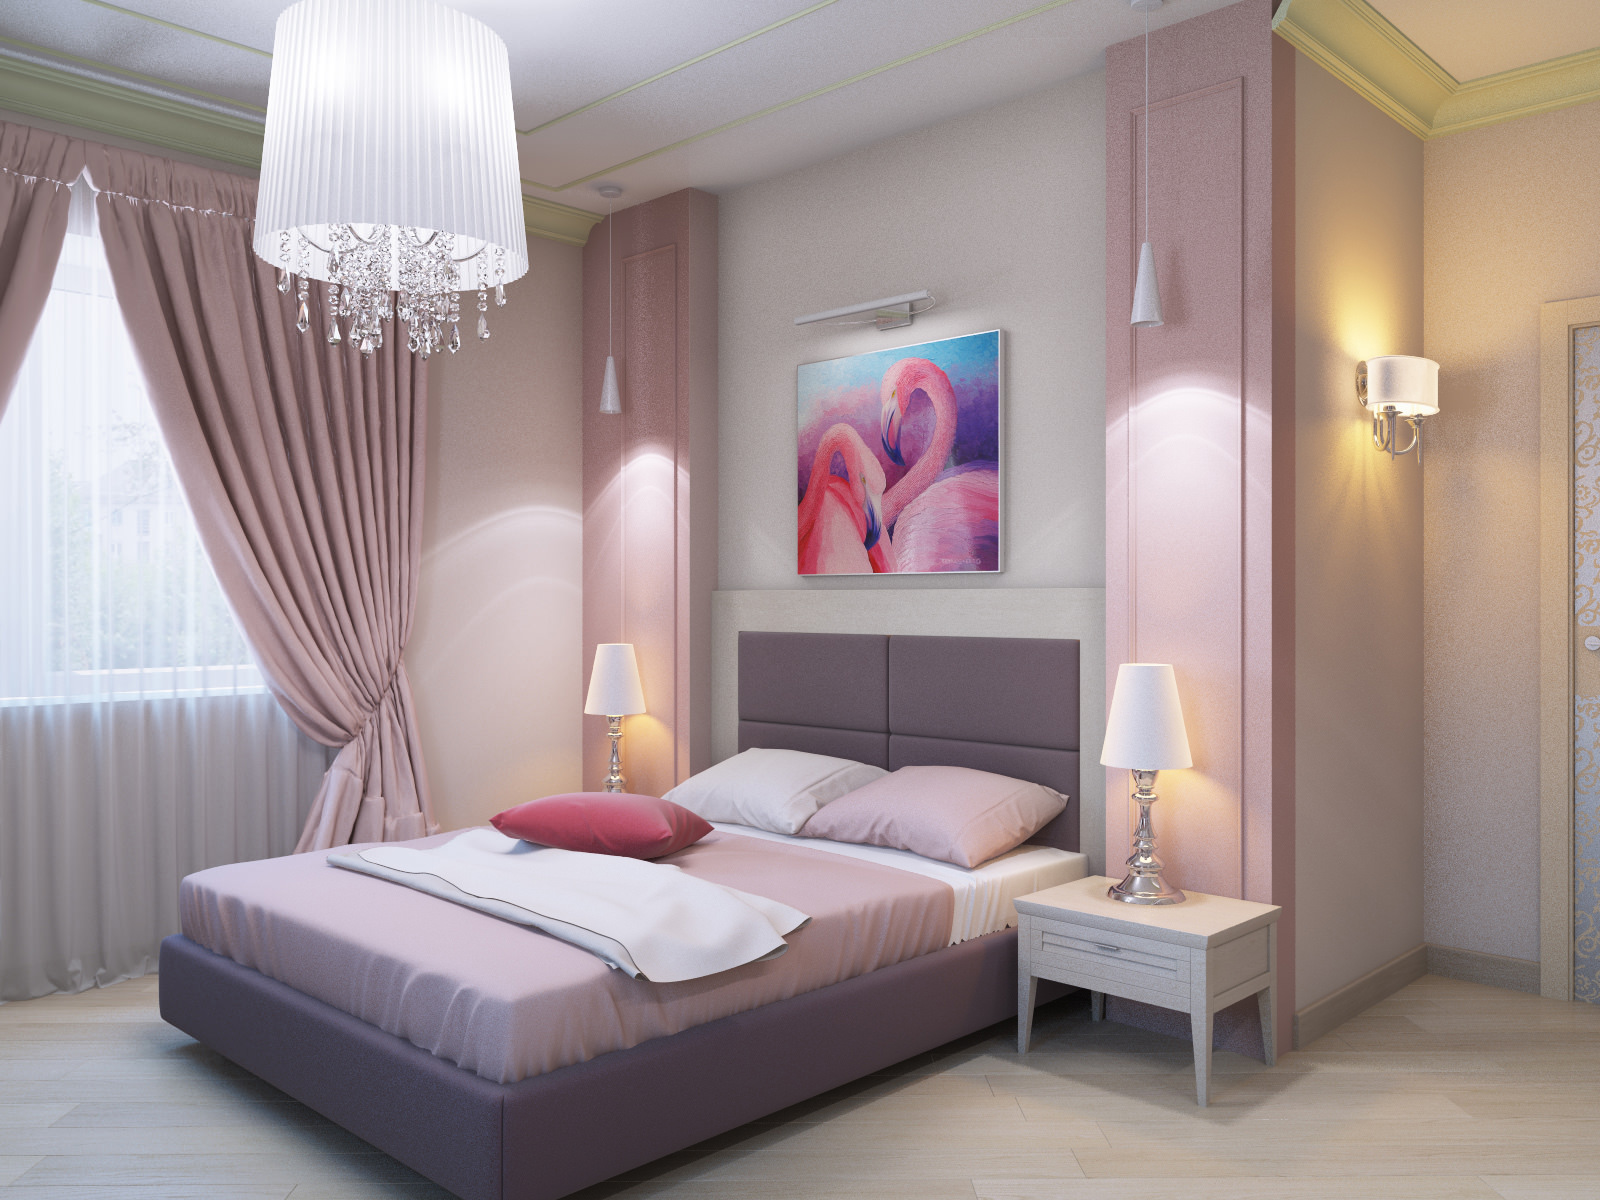 дизайн спальни в розовых тонах с картиной над кроватью